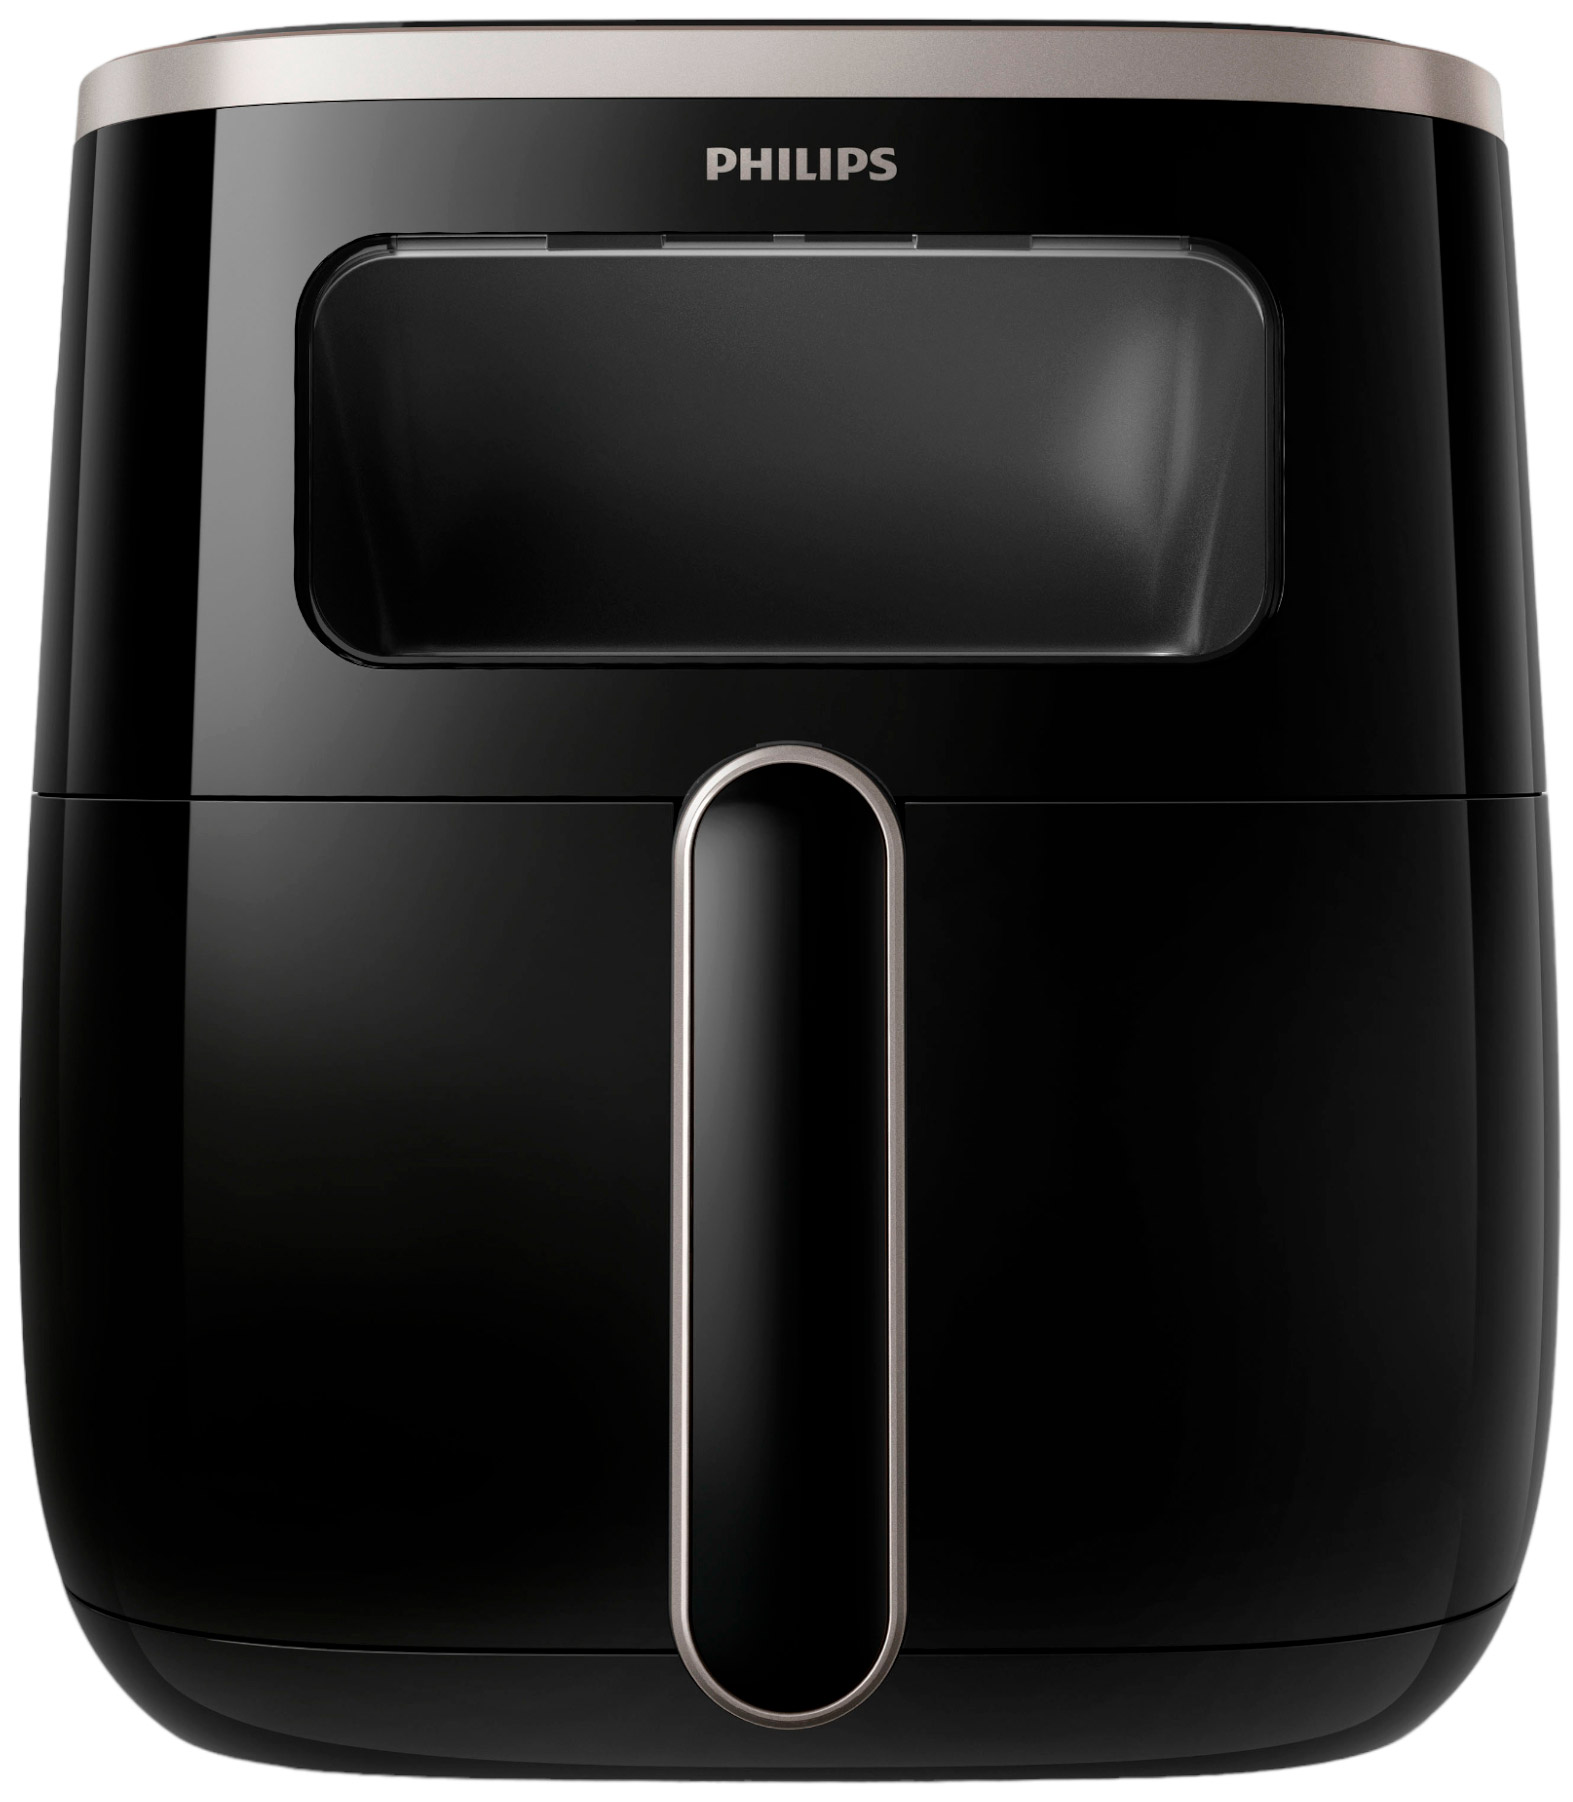 Philips Airfryer 3000 Series XL (HD9257/80)